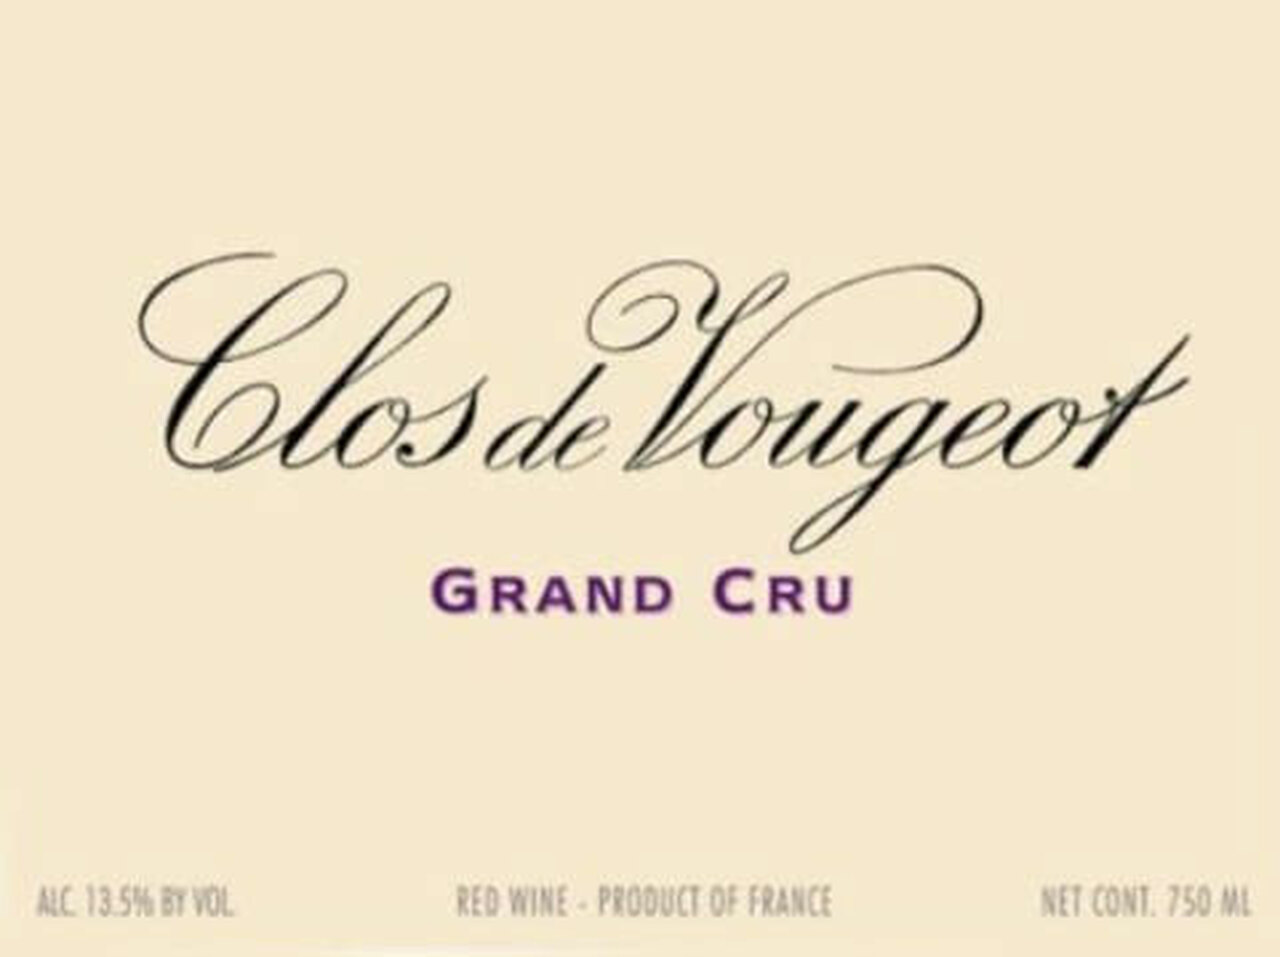 2018 DOMAINE DE LA VOUGERAIE CLOS VOUGEOT GRAND CRU MAGNUM - click image for full description